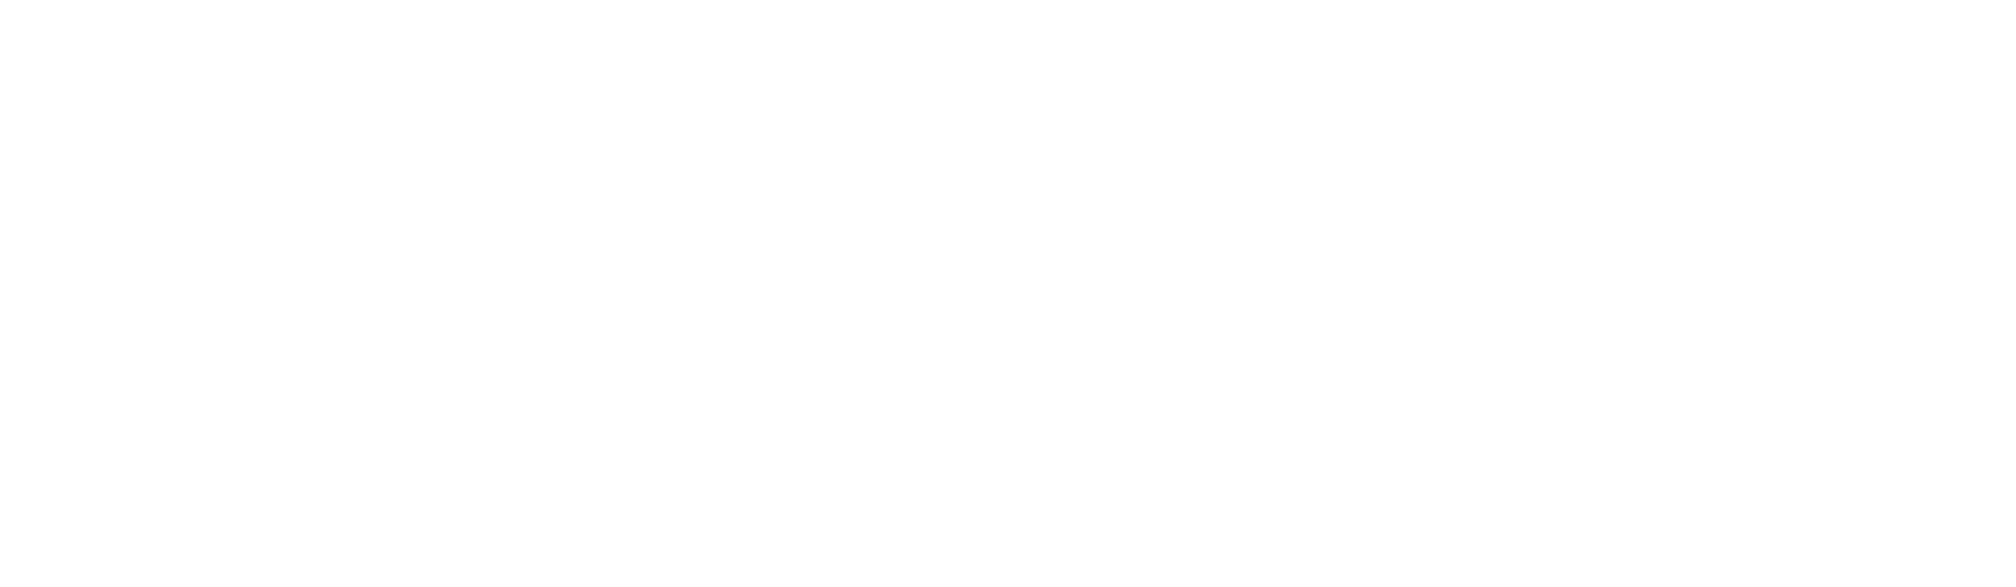 STM_logo_white